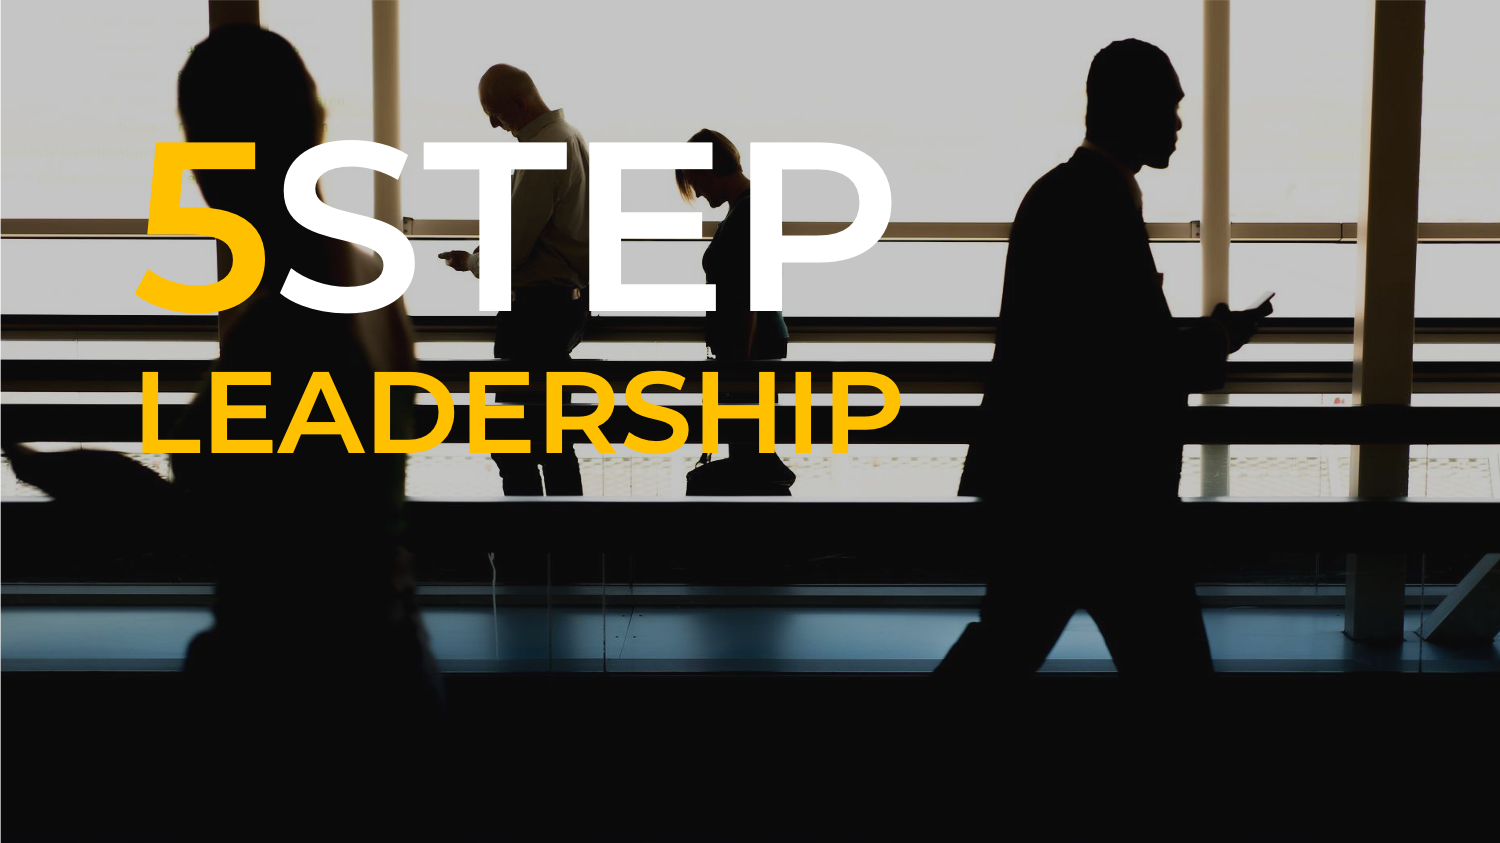 5STEP-Leadership _Header _PEOPLE.png